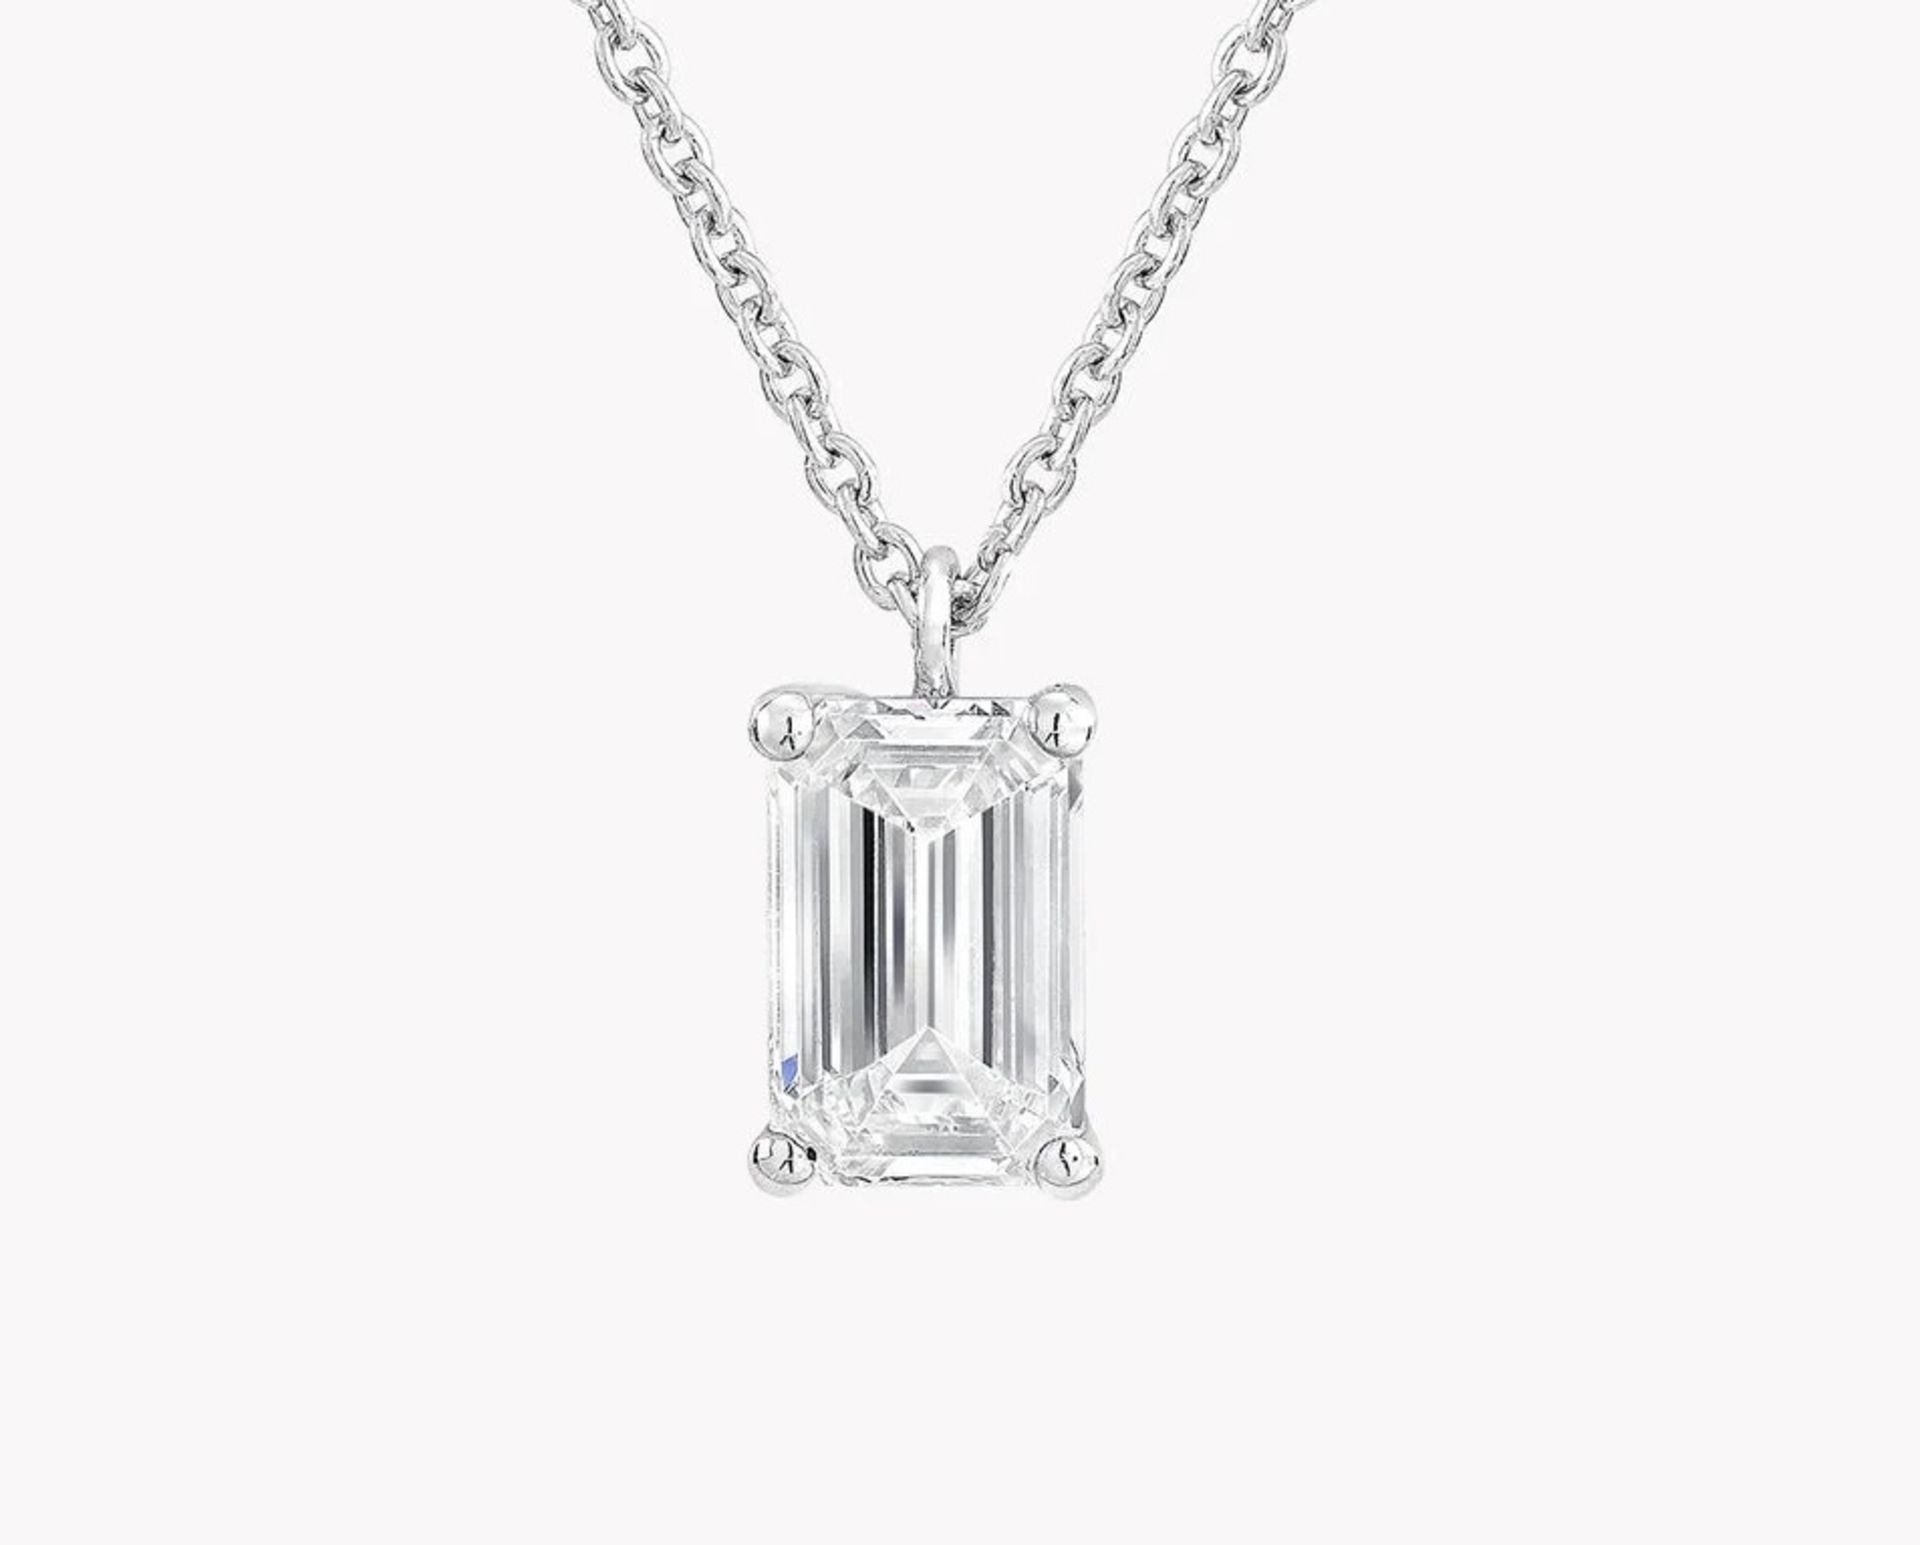 Emerald Cut Diamond 2.00 Carat D Colour VVS2 Clarity - Necklace Pendant - 18kt White Gold -IGI - Bild 2 aus 3